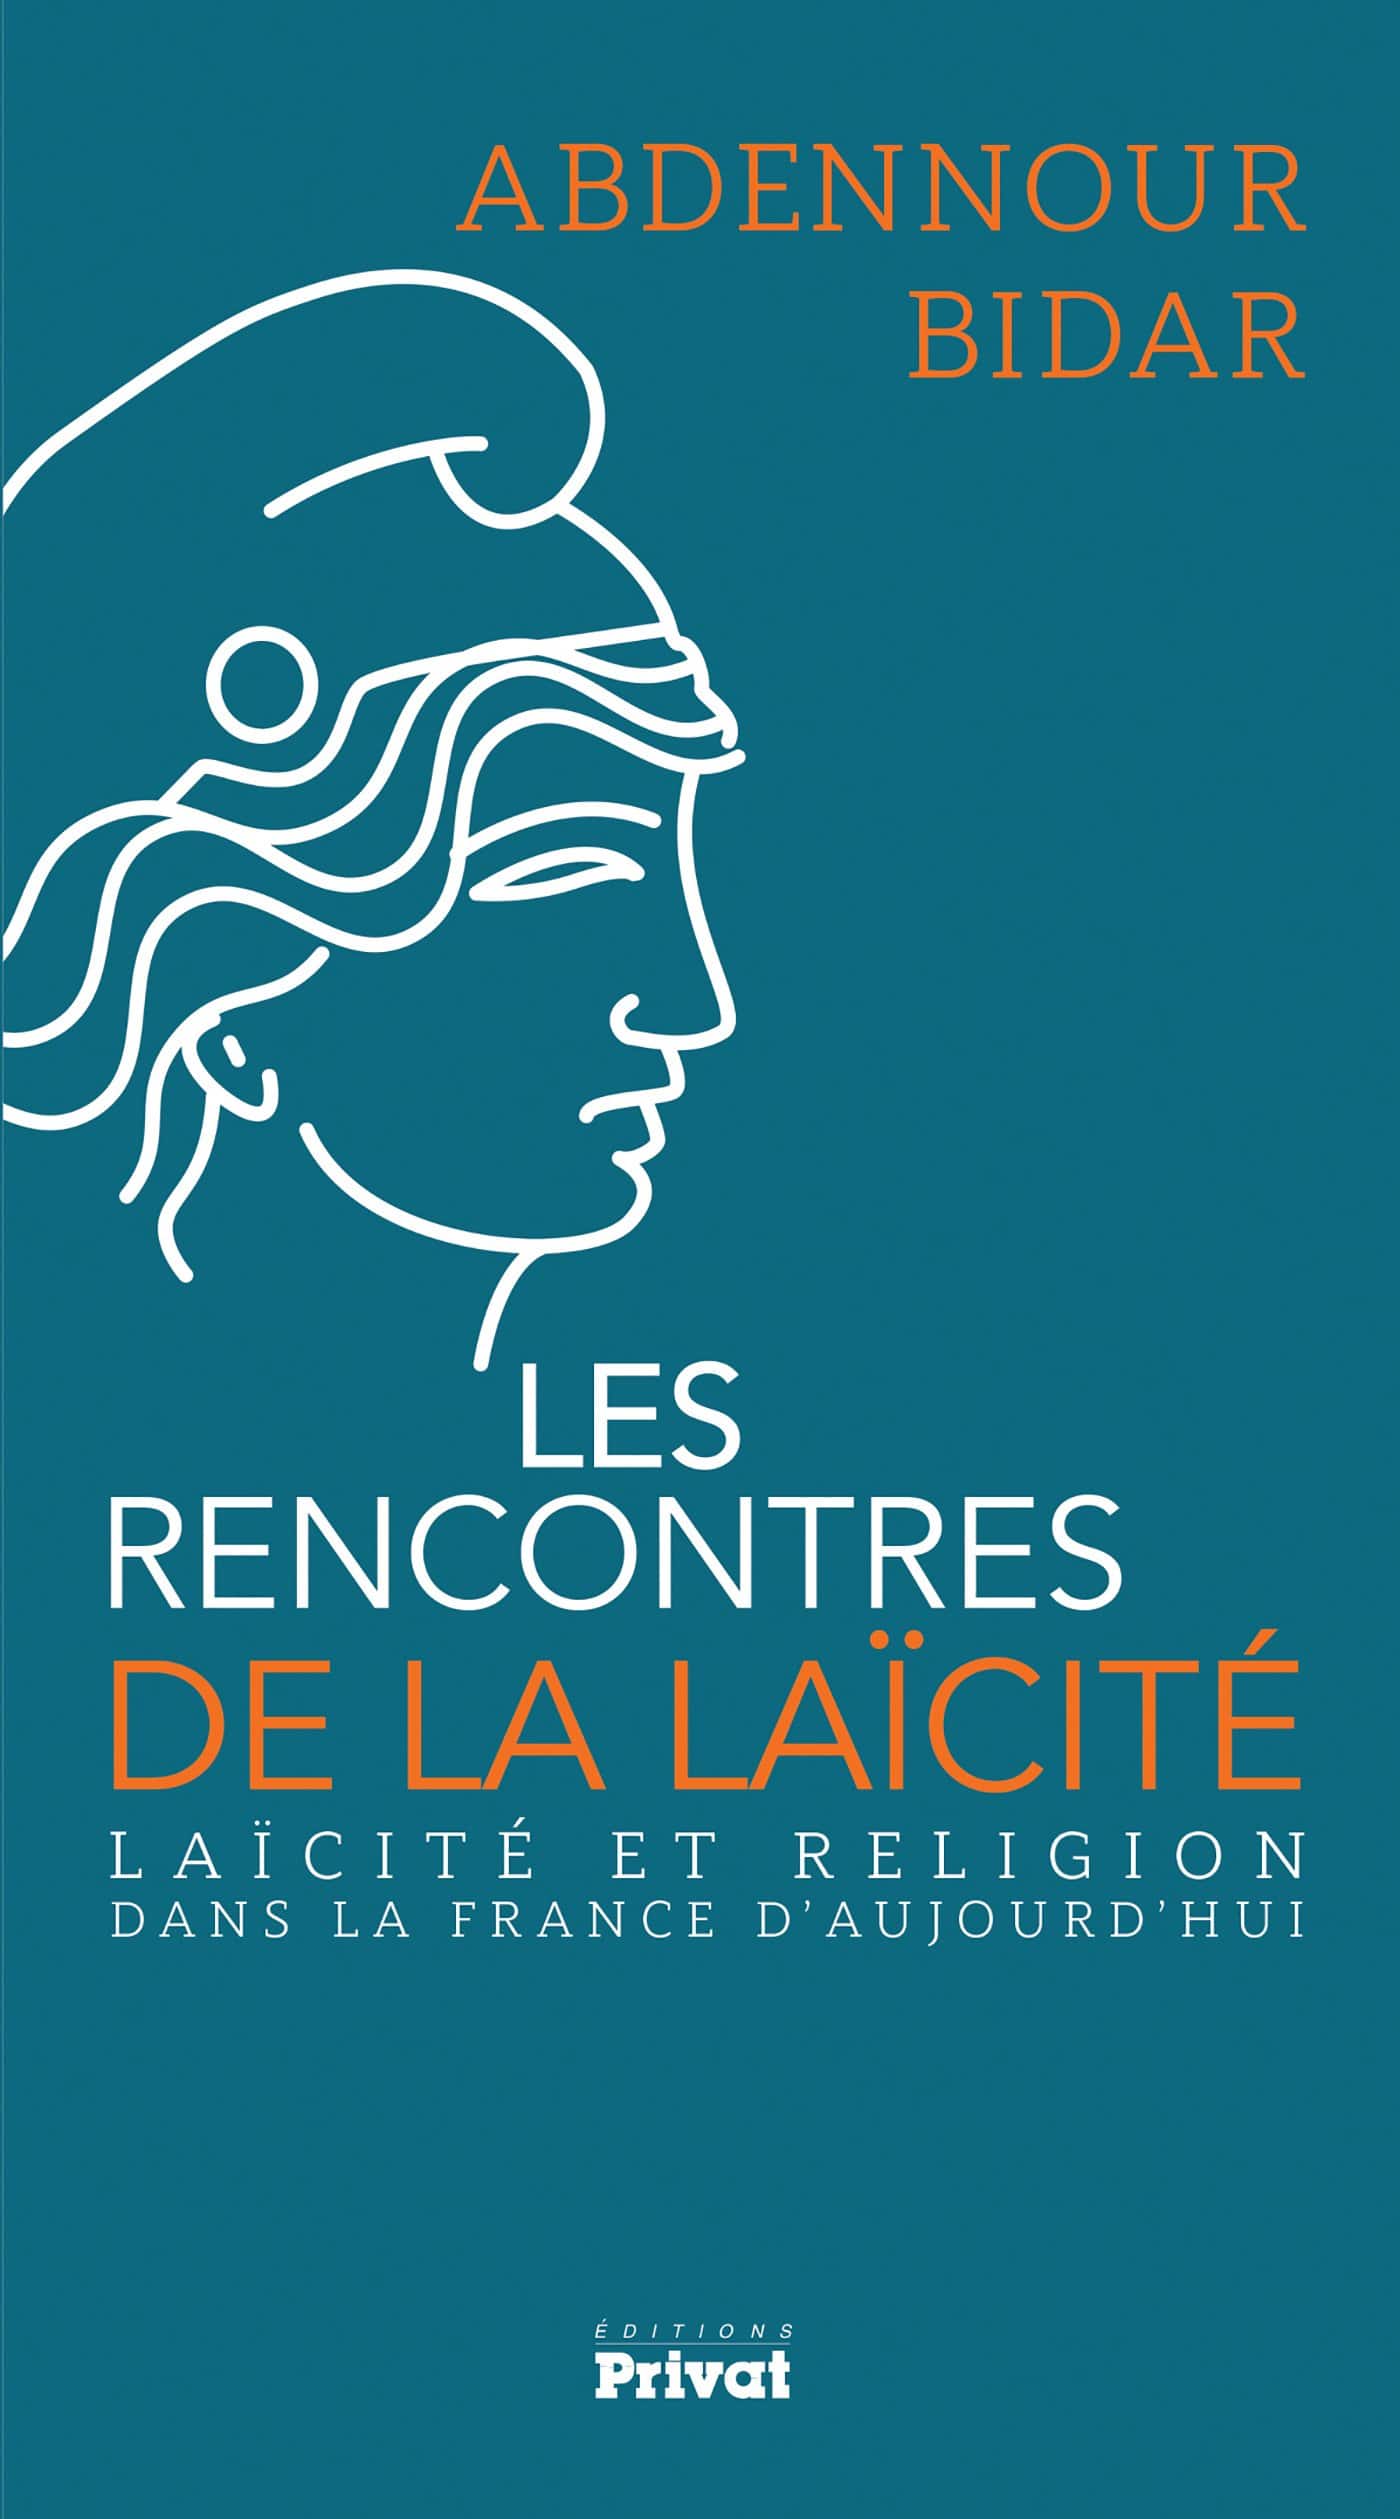 Livre - Laïcité et religion dans la France d'aujourd'hui